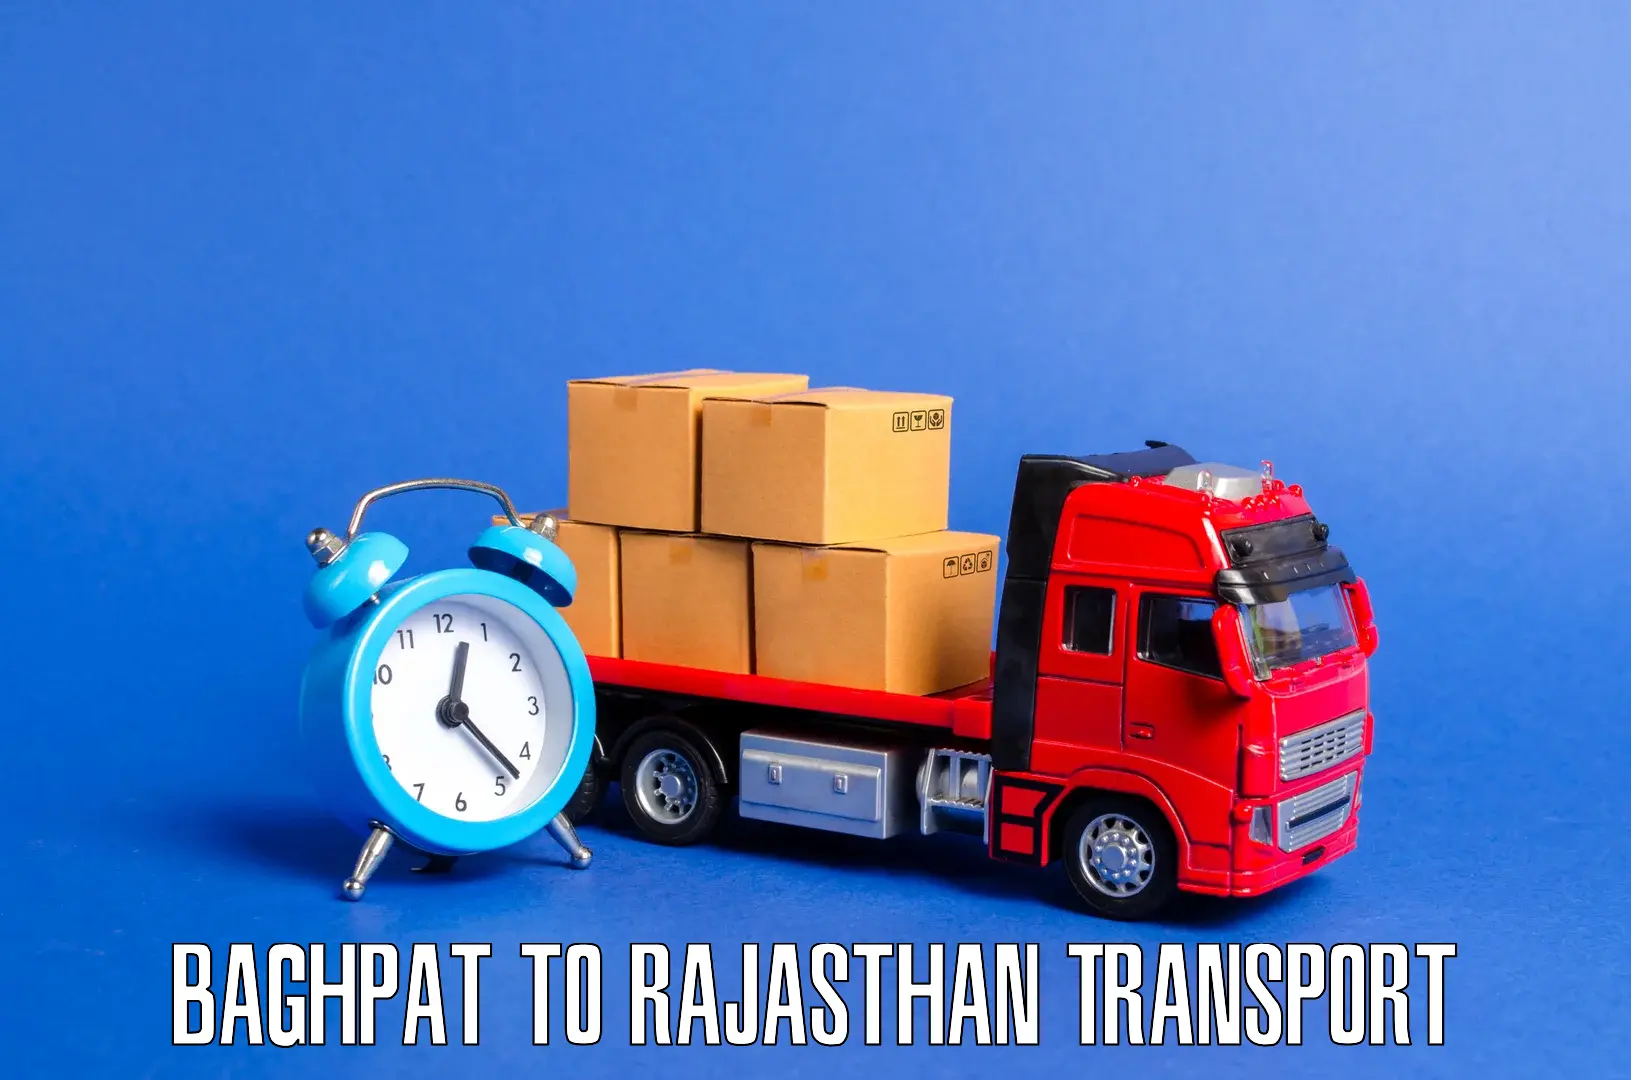 Sending bike to another city Baghpat to Pratapgarh Rajasthan